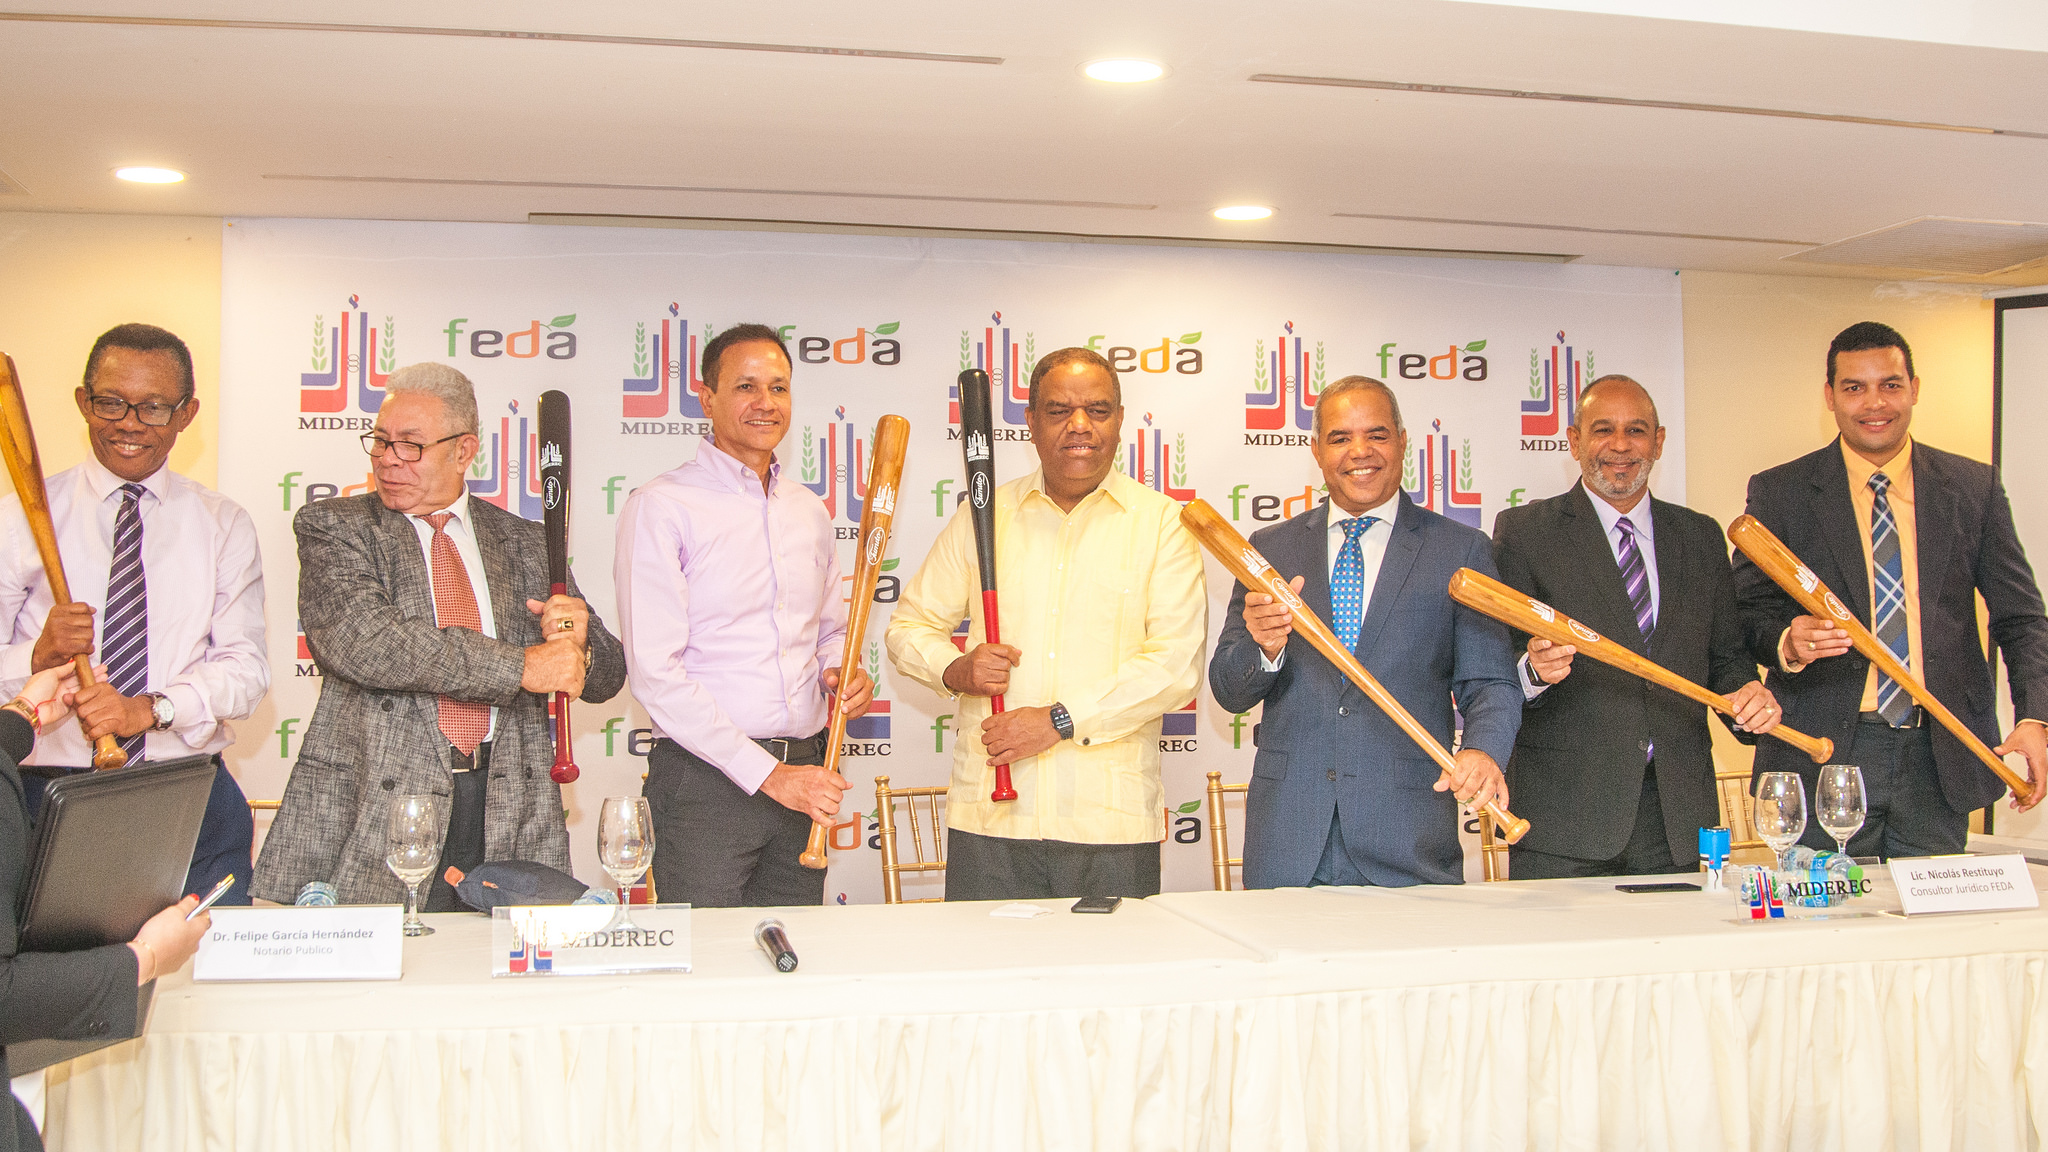 REPÚBLICA DOMINICANA: FEDA y Ministerio de Deportes presentan primeros bates de béisbol hechos de bambú por artesanos apoyados en Visita Sorpresa